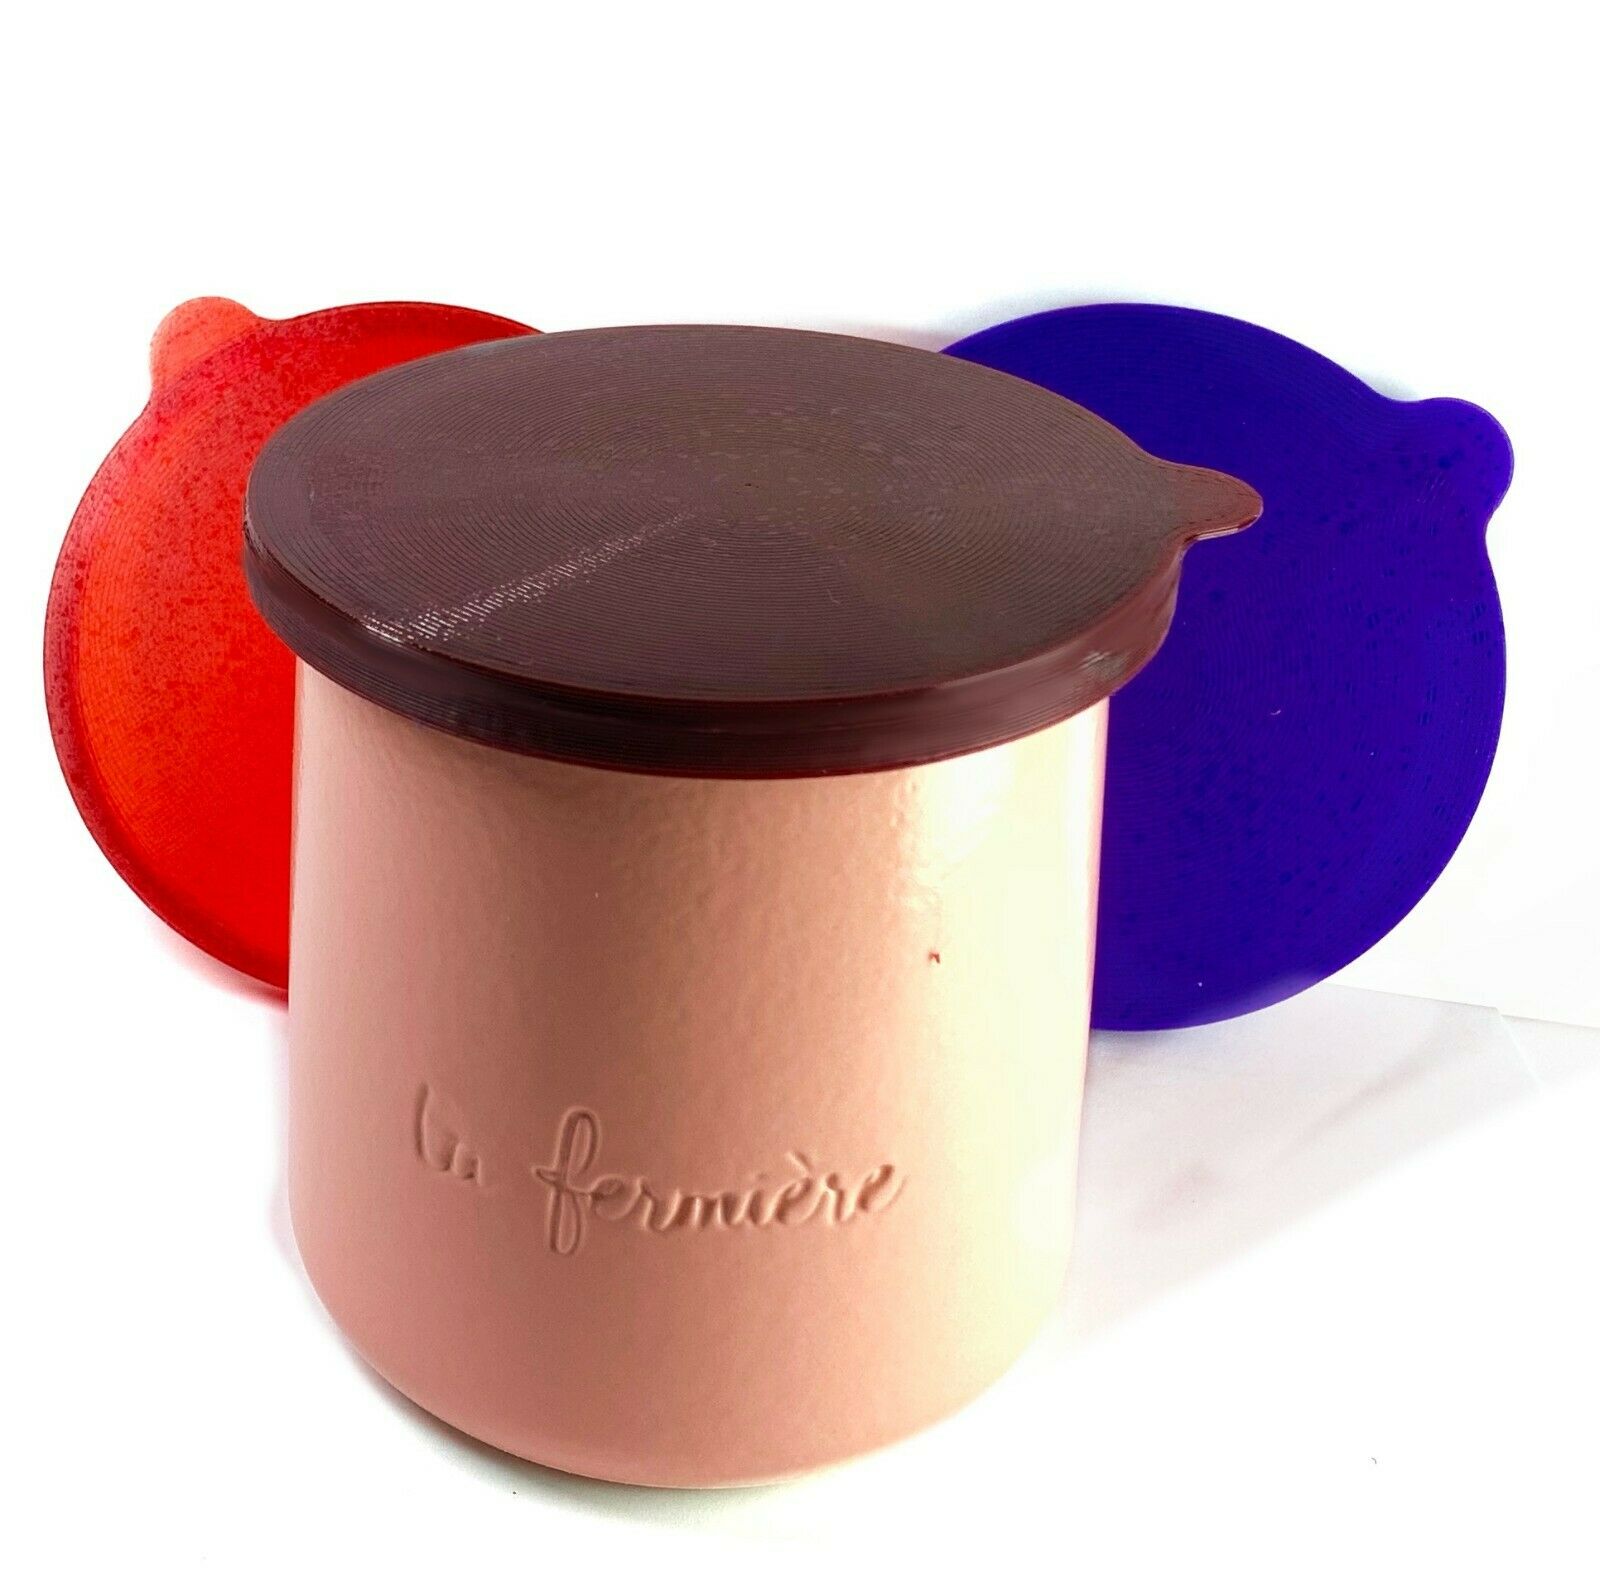 LA FERMIERE Yogurt jar lids WITH TABS --   Pick Your Colors -   68 Colors ❤️